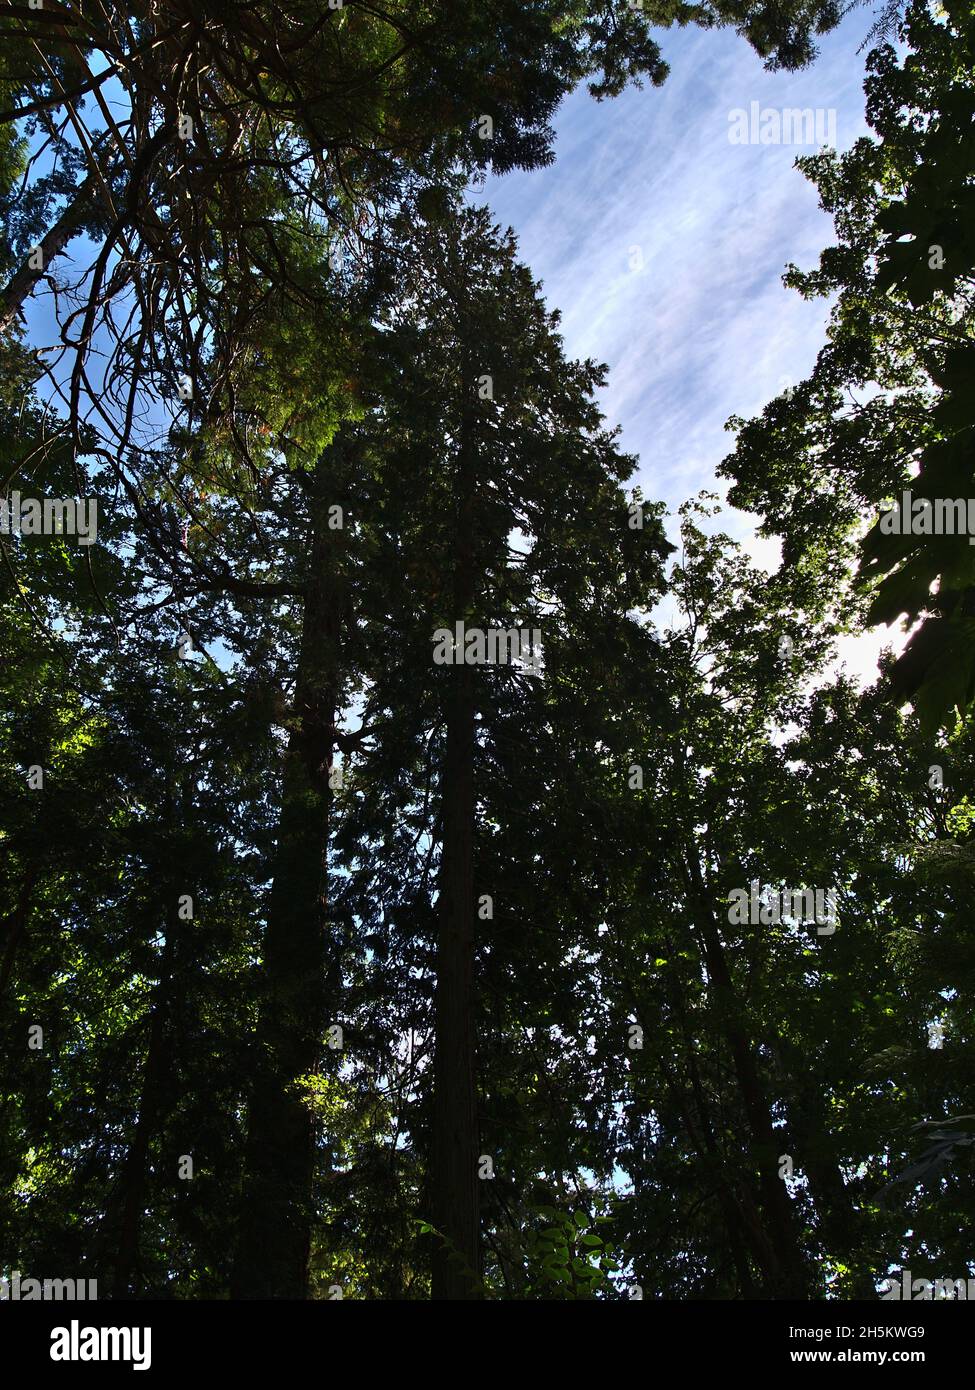 Vue à angle bas de la vieille forêt avec de grands sapins de Douglas (Pseudotsuga menziesii) dans Lighthouse Park, West Vancouver (Colombie-Britannique), Canada. Banque D'Images